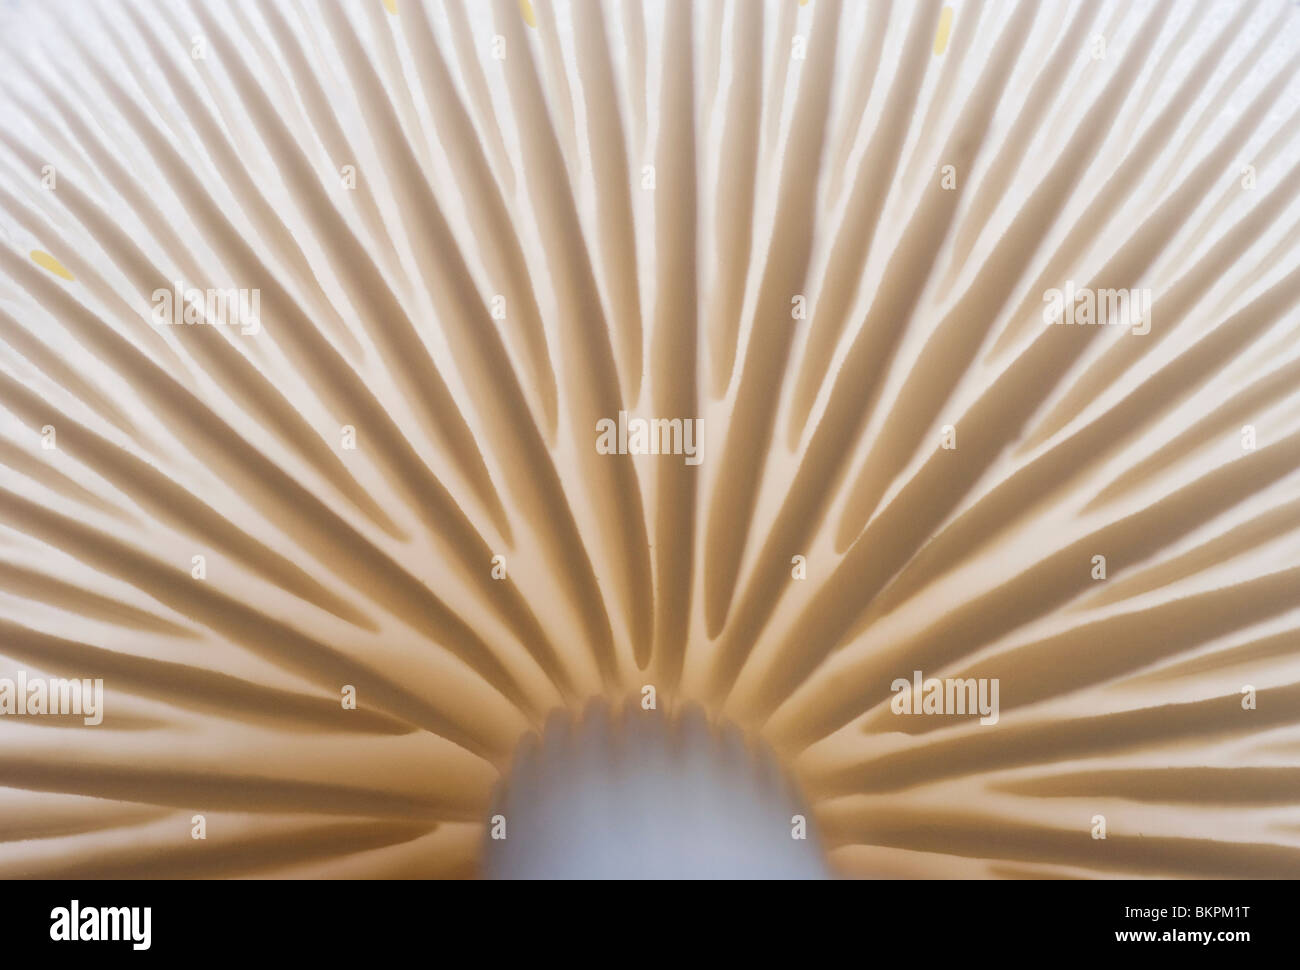 Vista dal basso di dettaglio del fungo di porcellana; Onderaanzicht dettaglio porseleinzwam; Foto Stock